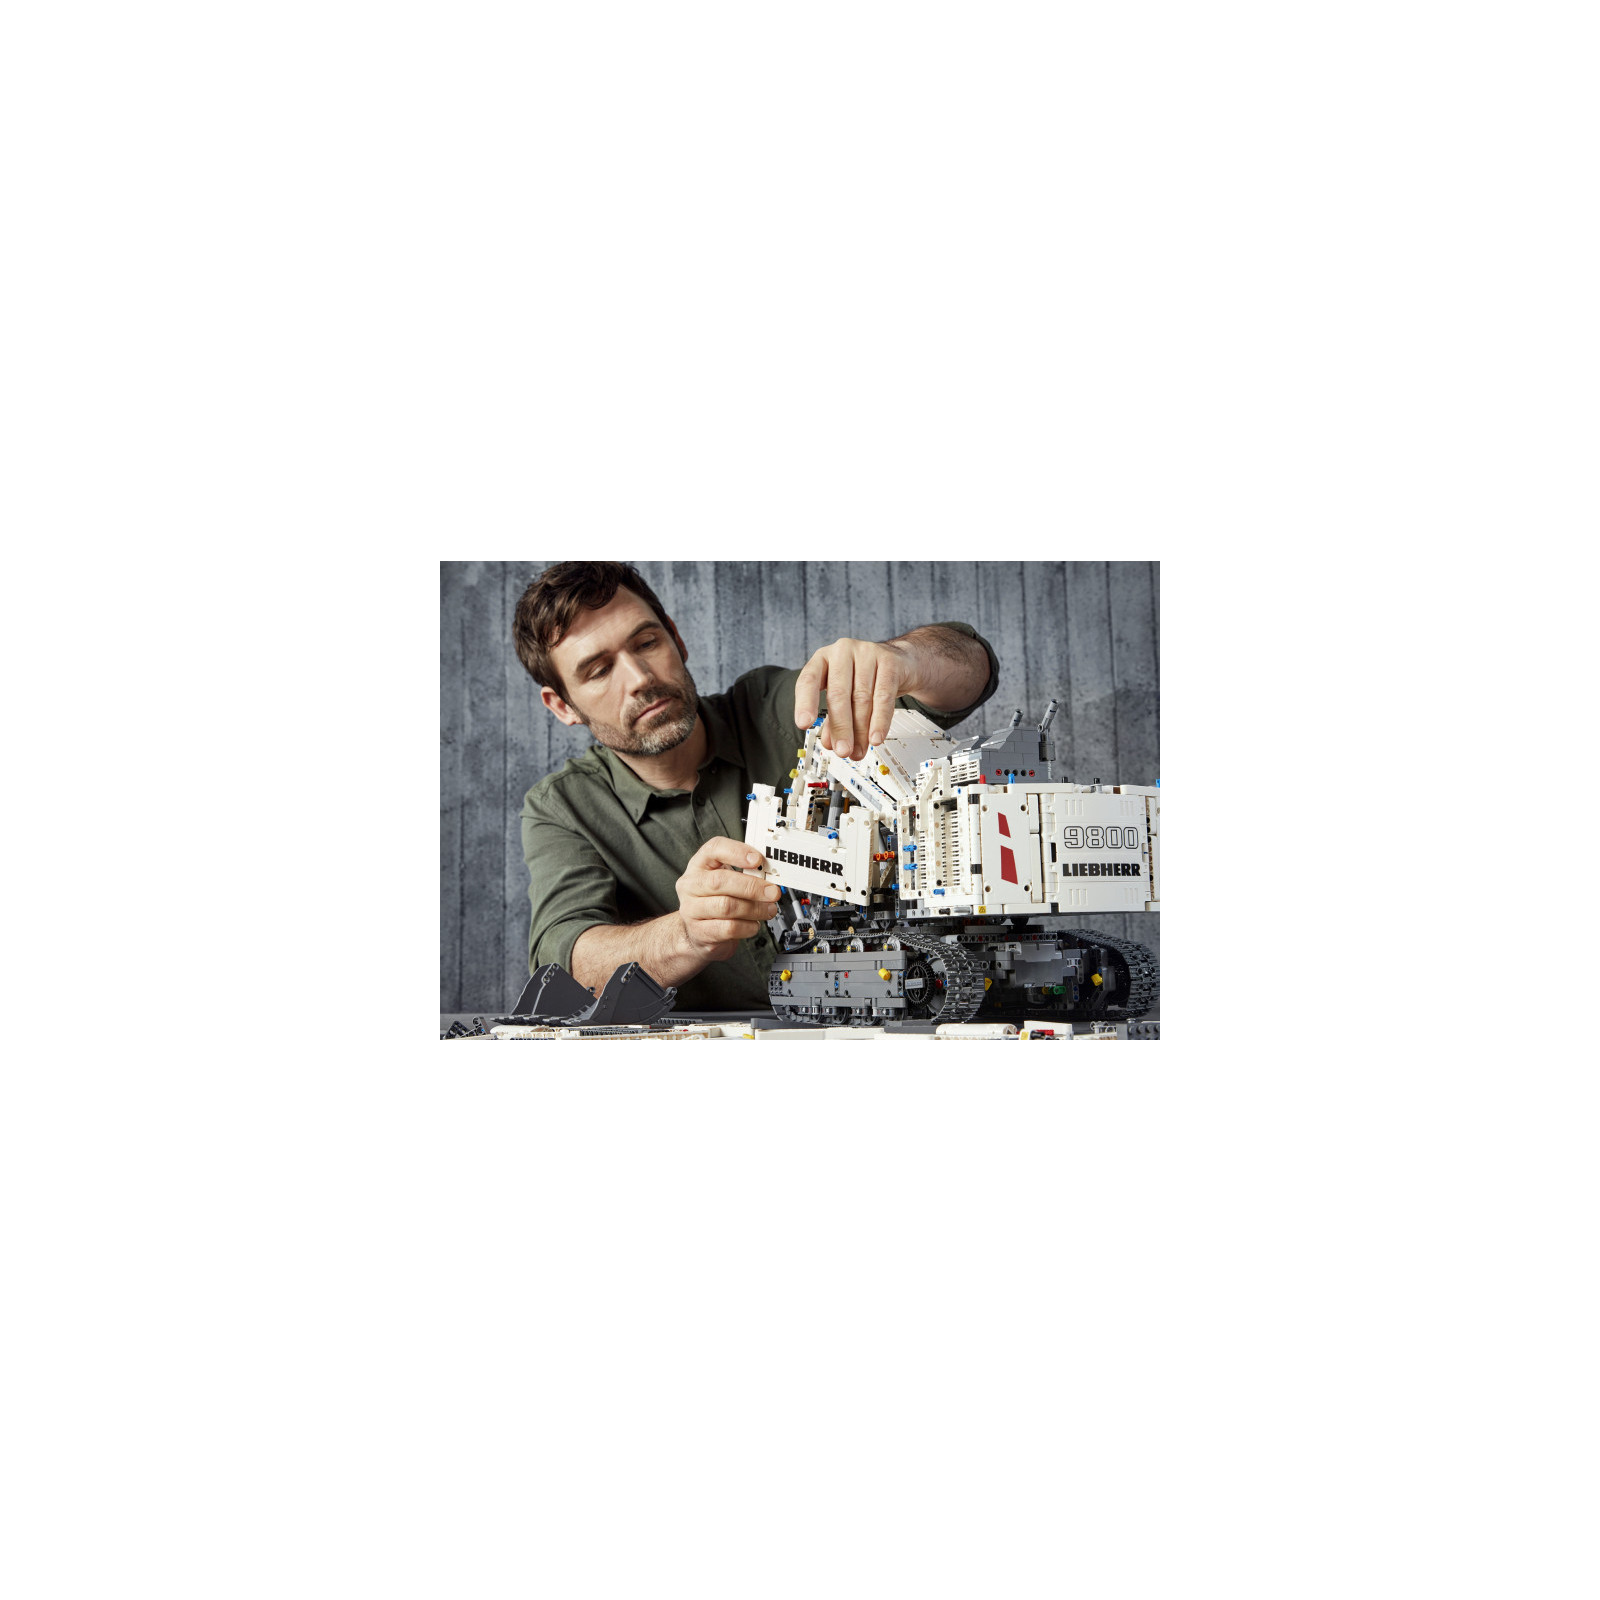 Конструктор LEGO Technic Экскаватор Liebherr R 9800 4108 деталей (42100) изображение 12